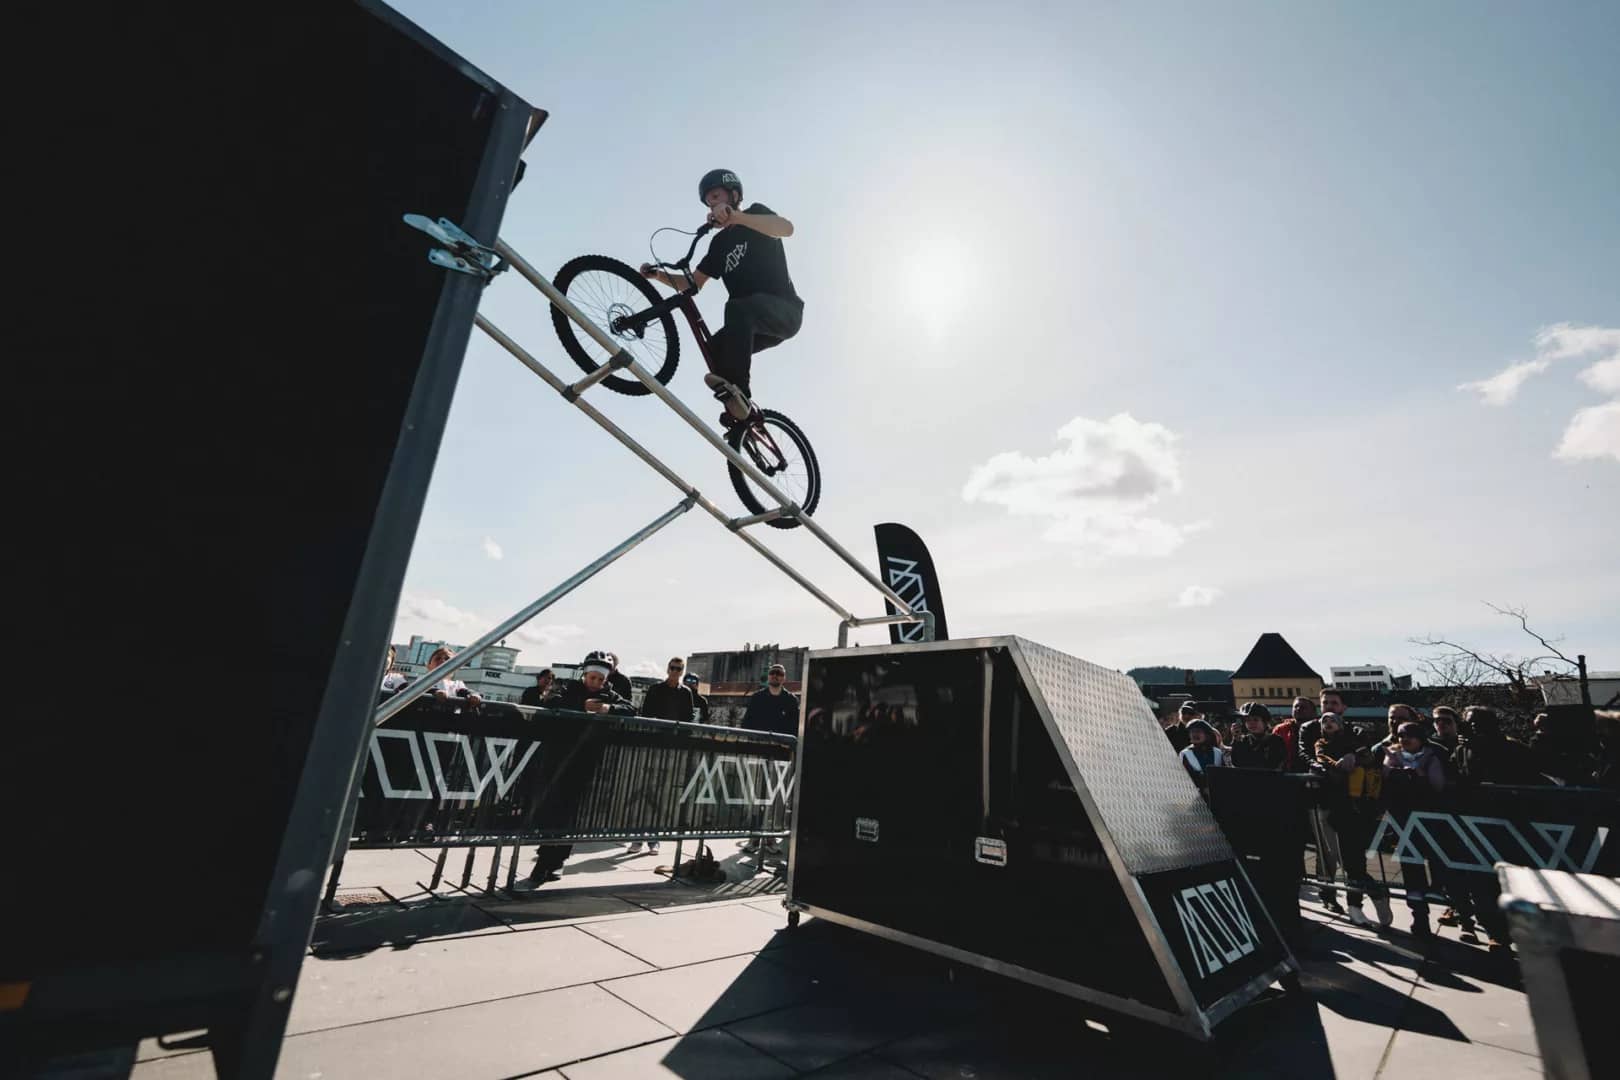 Actionfylt show på Festplassen i Bergen - Joachim sykler opp stigen